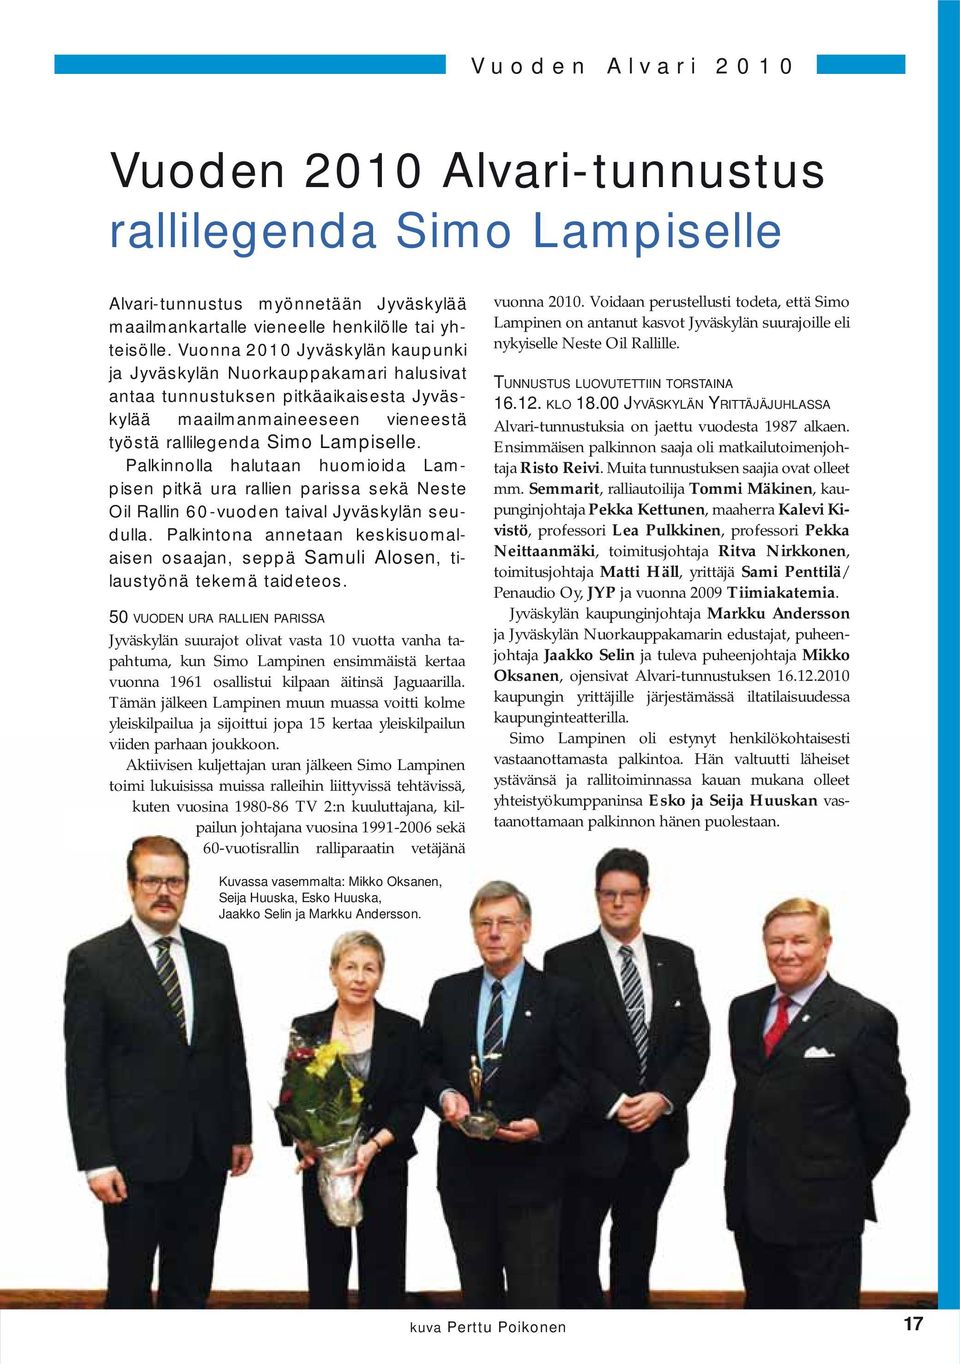 Palkinnolla halutaan huomioida Lampisen pitkä ura rallien parissa sekä Neste Oil Rallin 60-vuoden taival Jyväskylän seudulla.